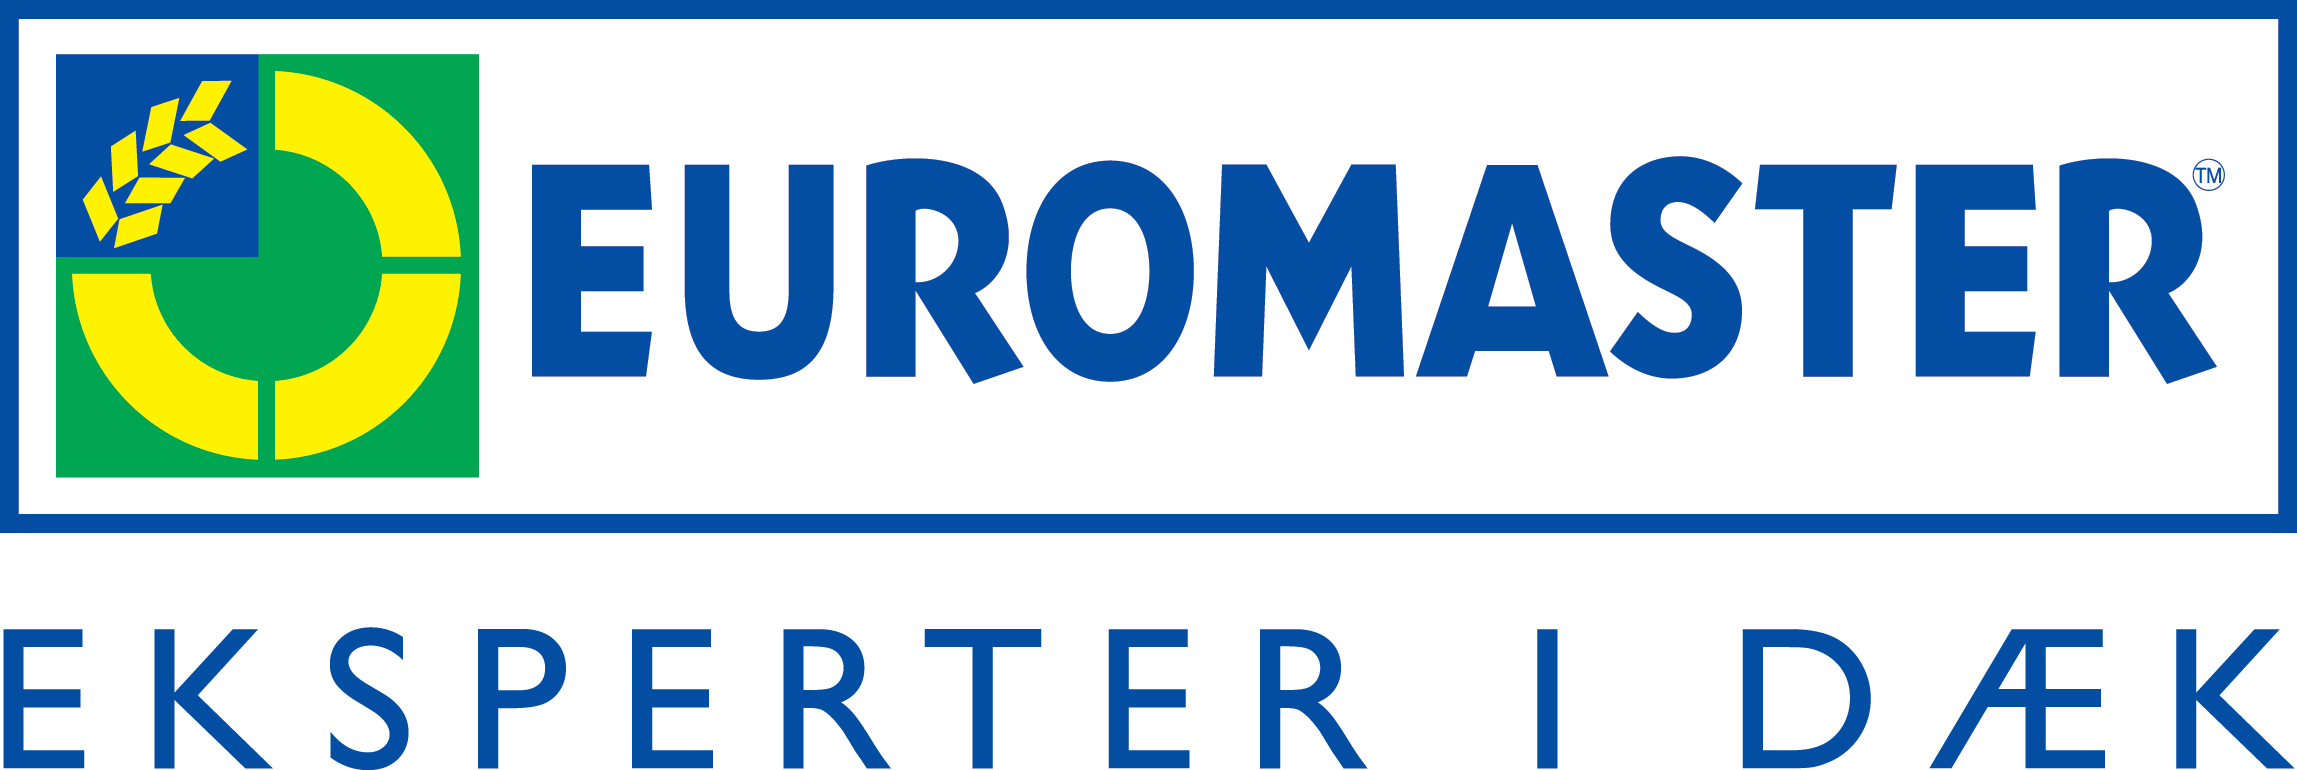 Euromaster Skejby gammel logo